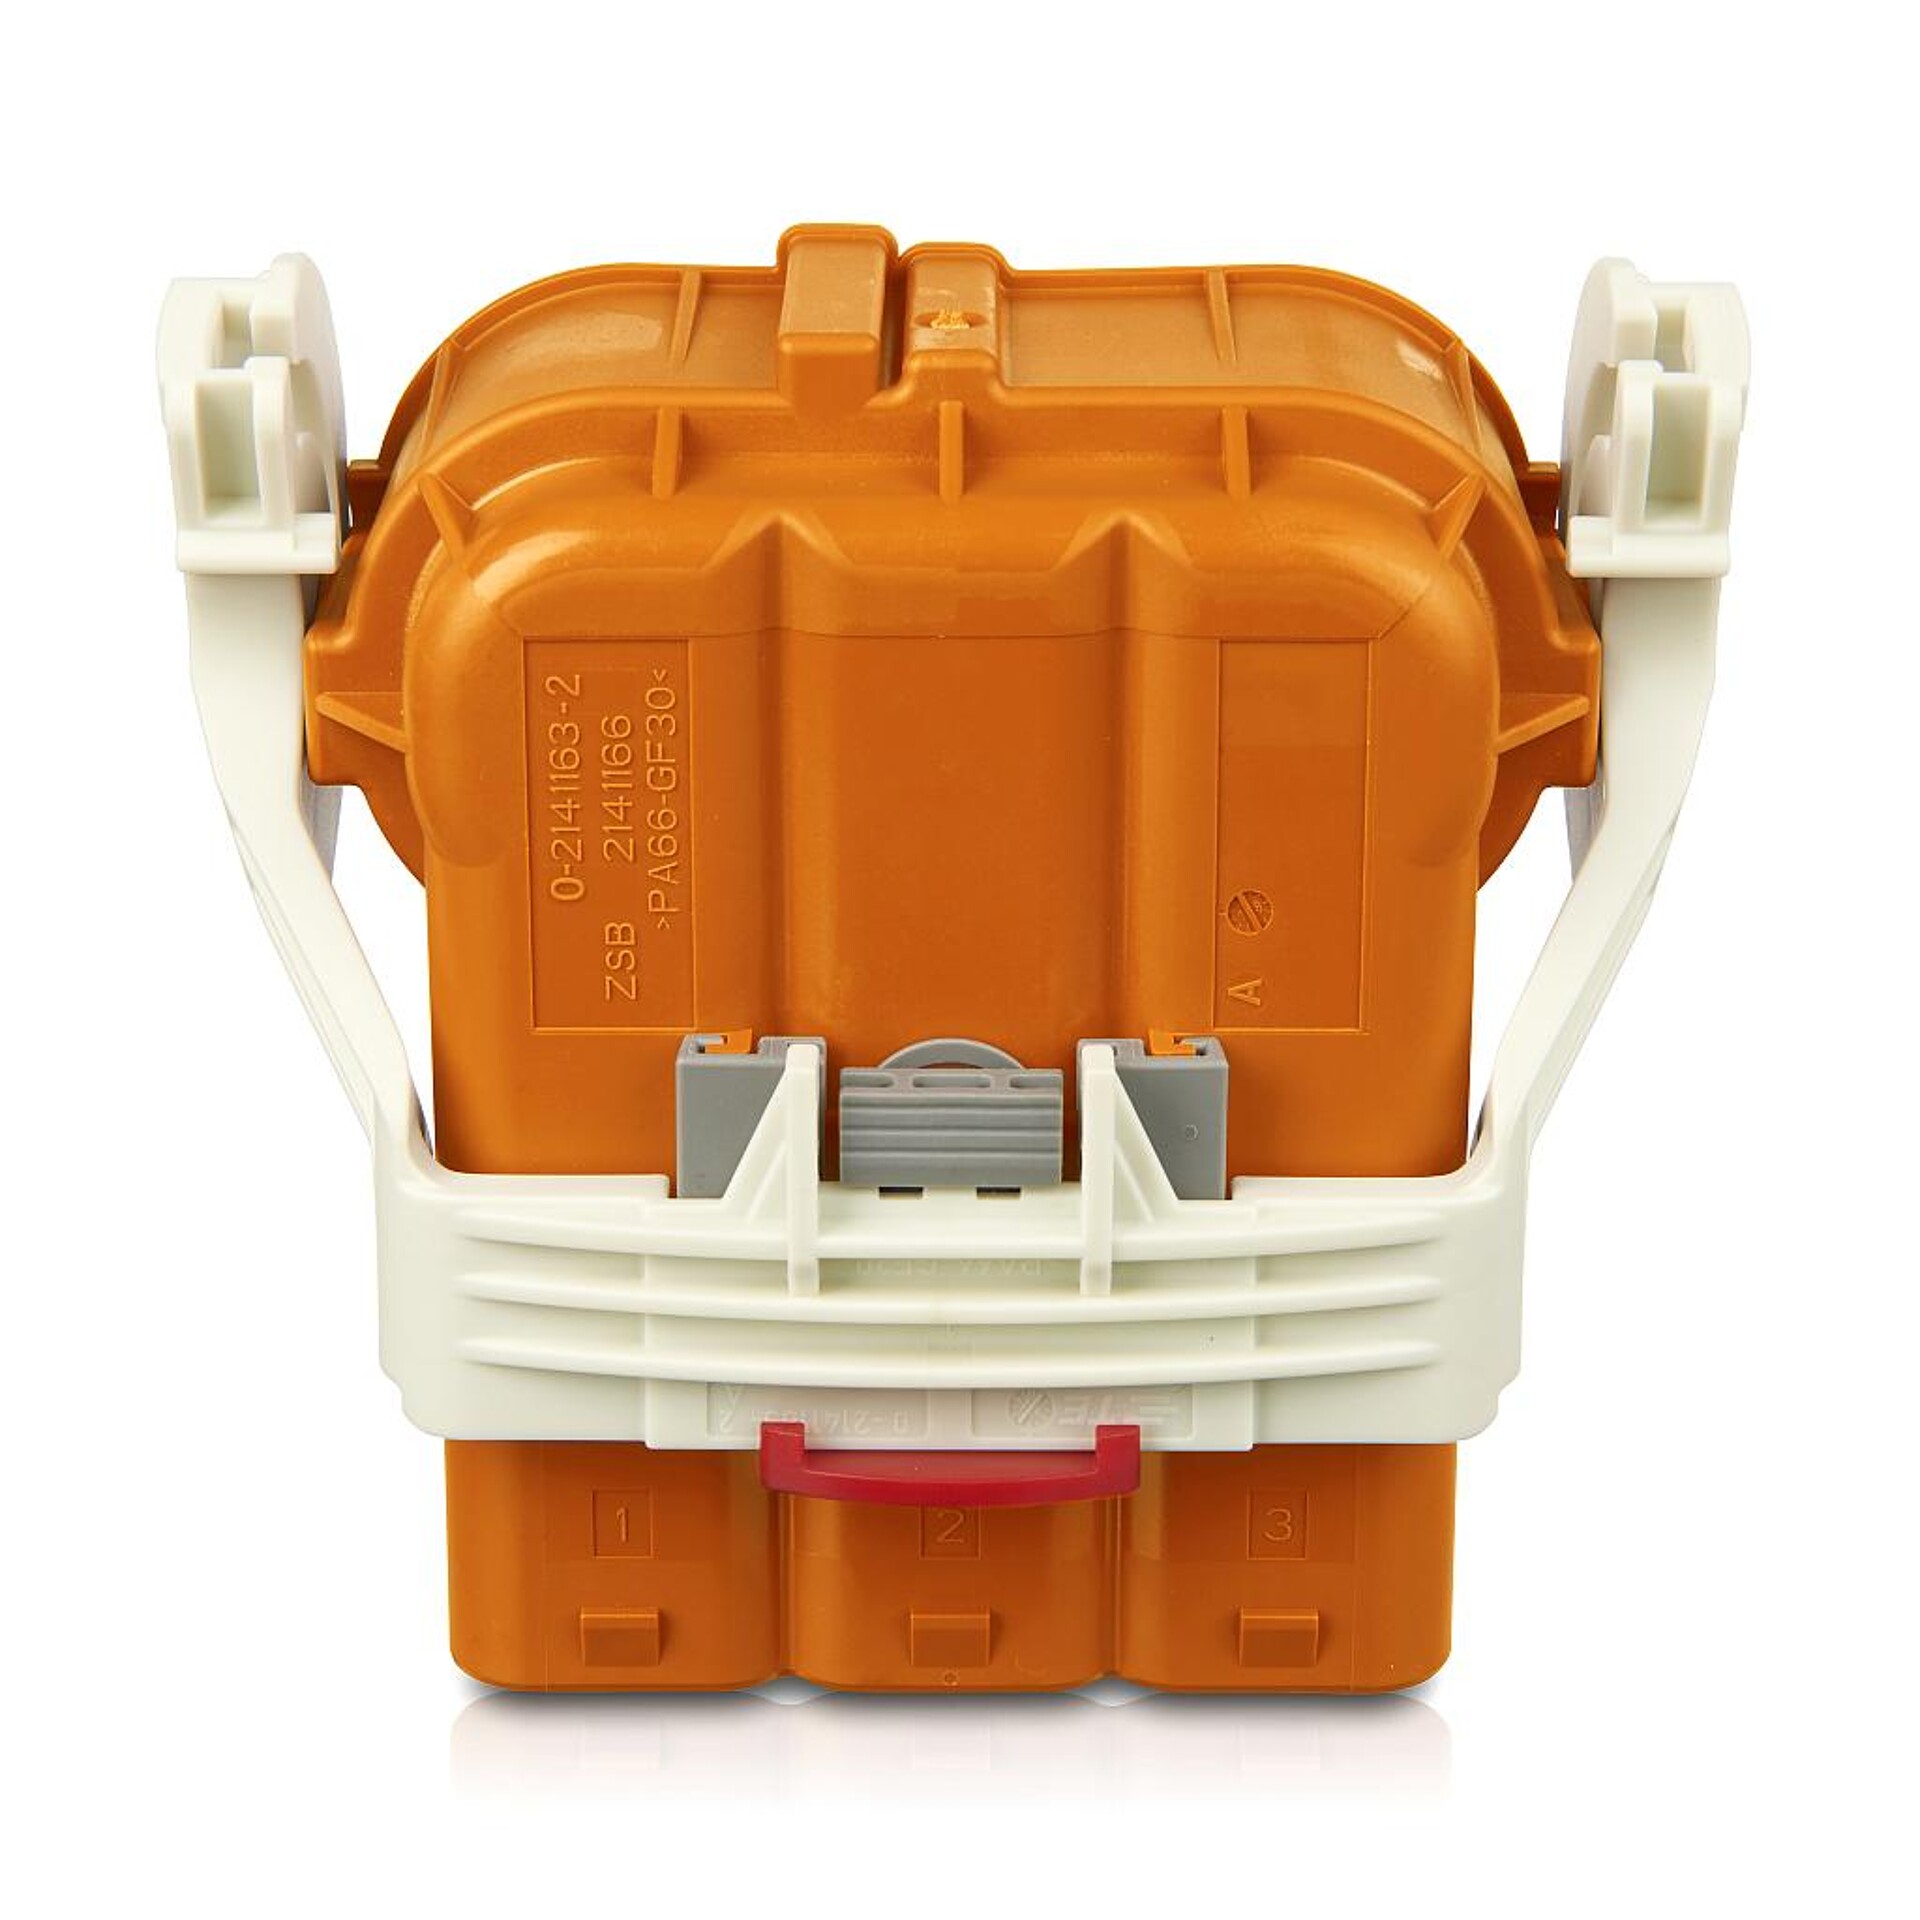 Der Orangefarbton wurde für anspruchsvolle Anwendungen wie Hochspannungs-Batterieanschlüsse in Elektrofahrzeugen entwickelt. (Foto: Milliken)